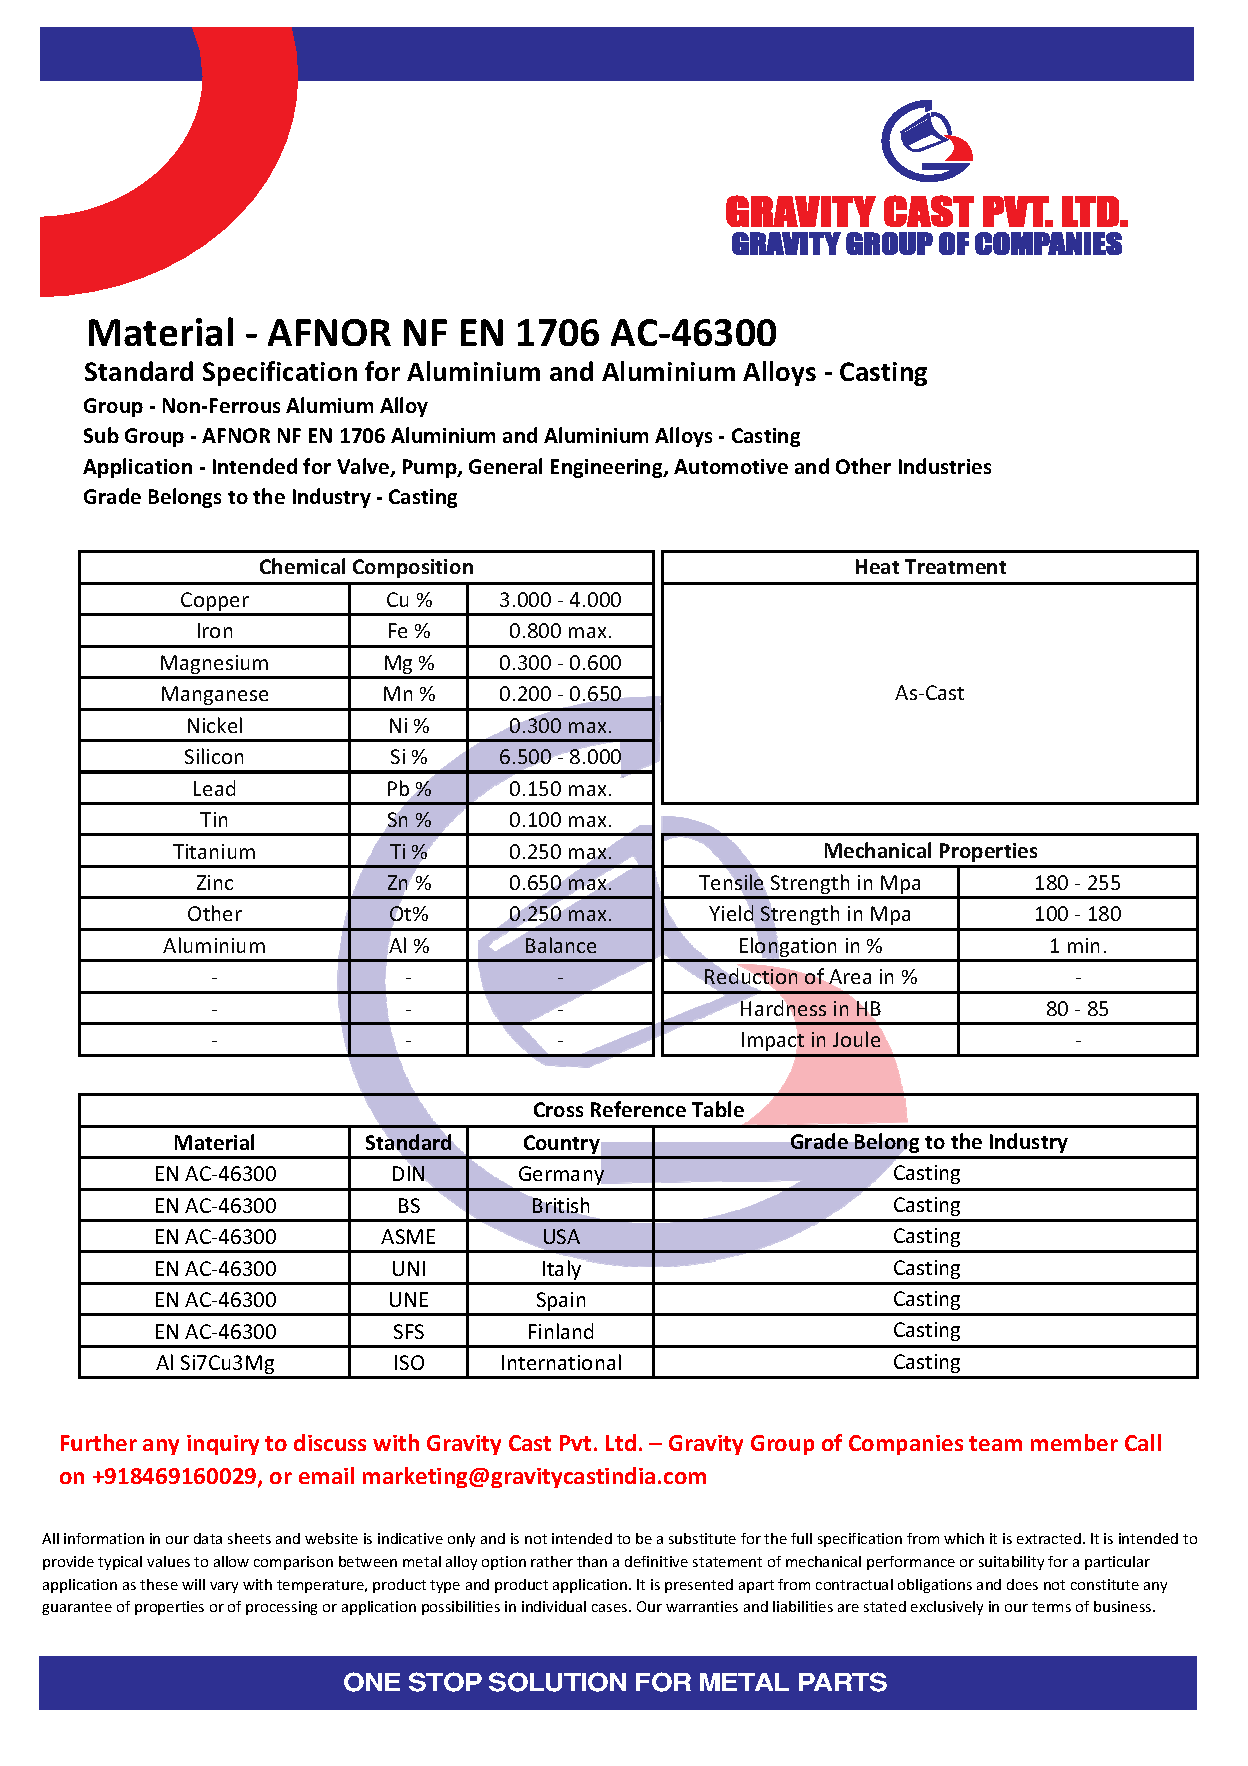 AFNOR NF EN 1706 AC-46300.pdf